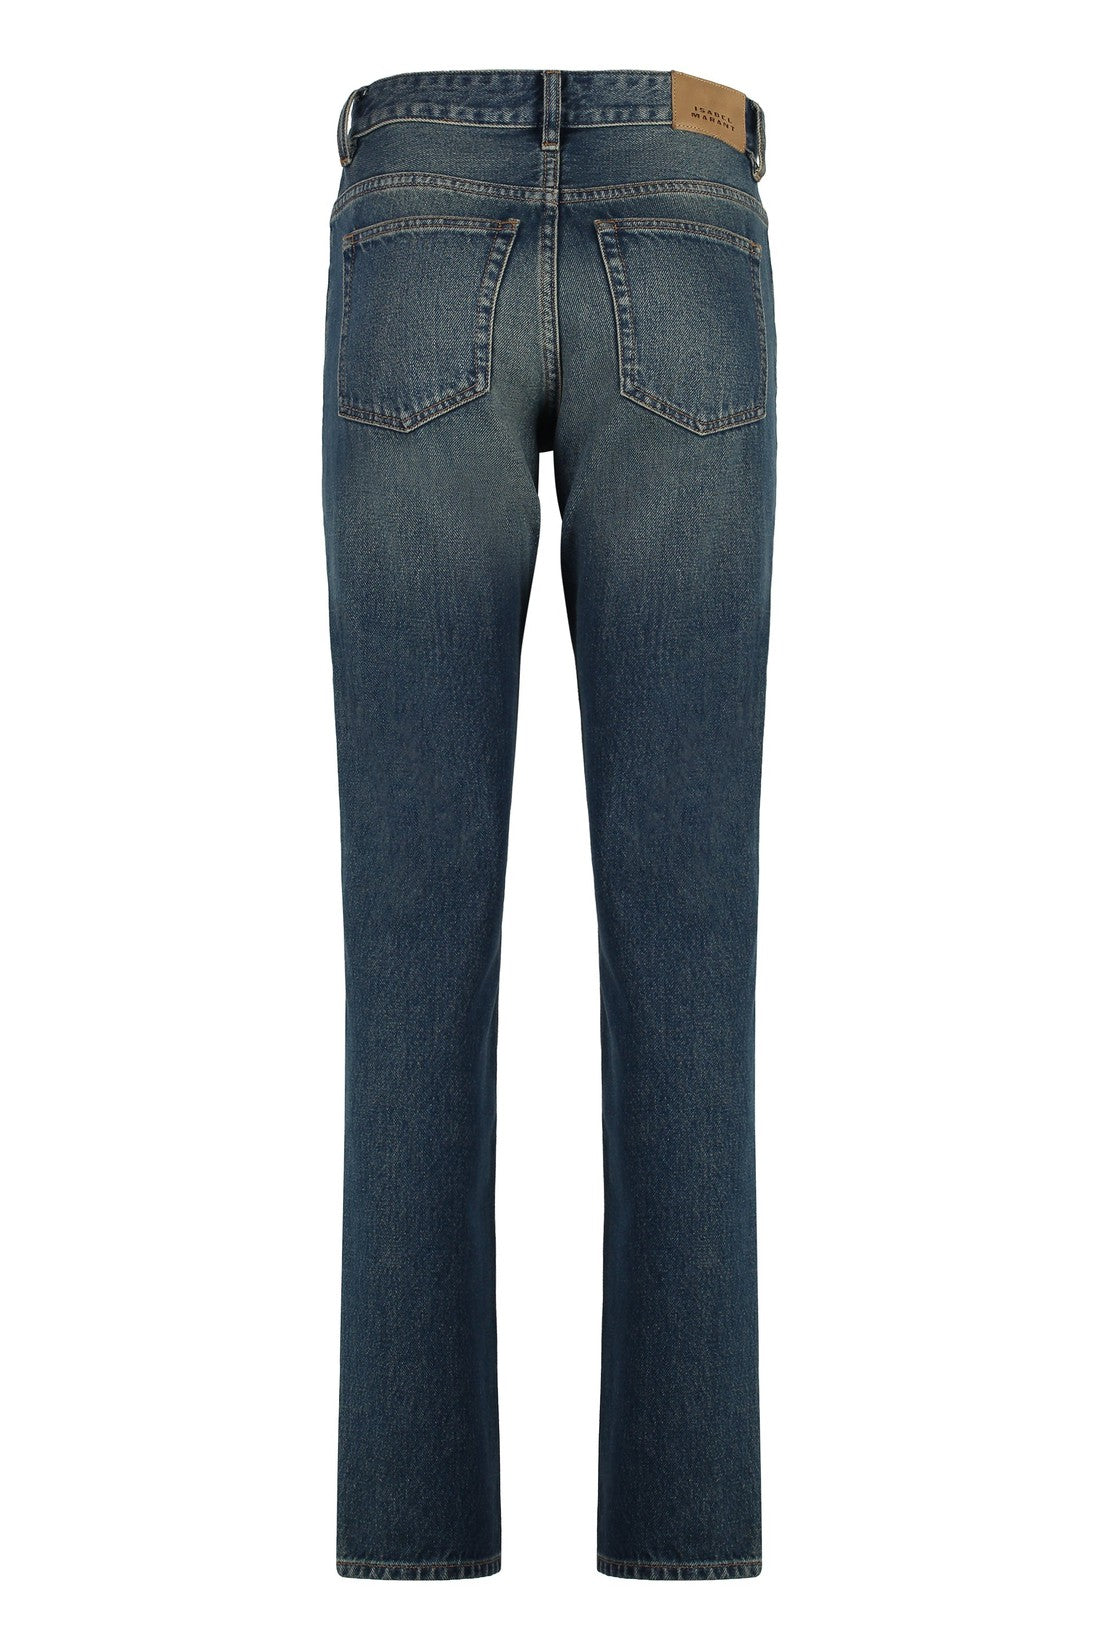 Isabel Marant-OUTLET-SALE-Jiliana stretch cotton jeans-ARCHIVIST